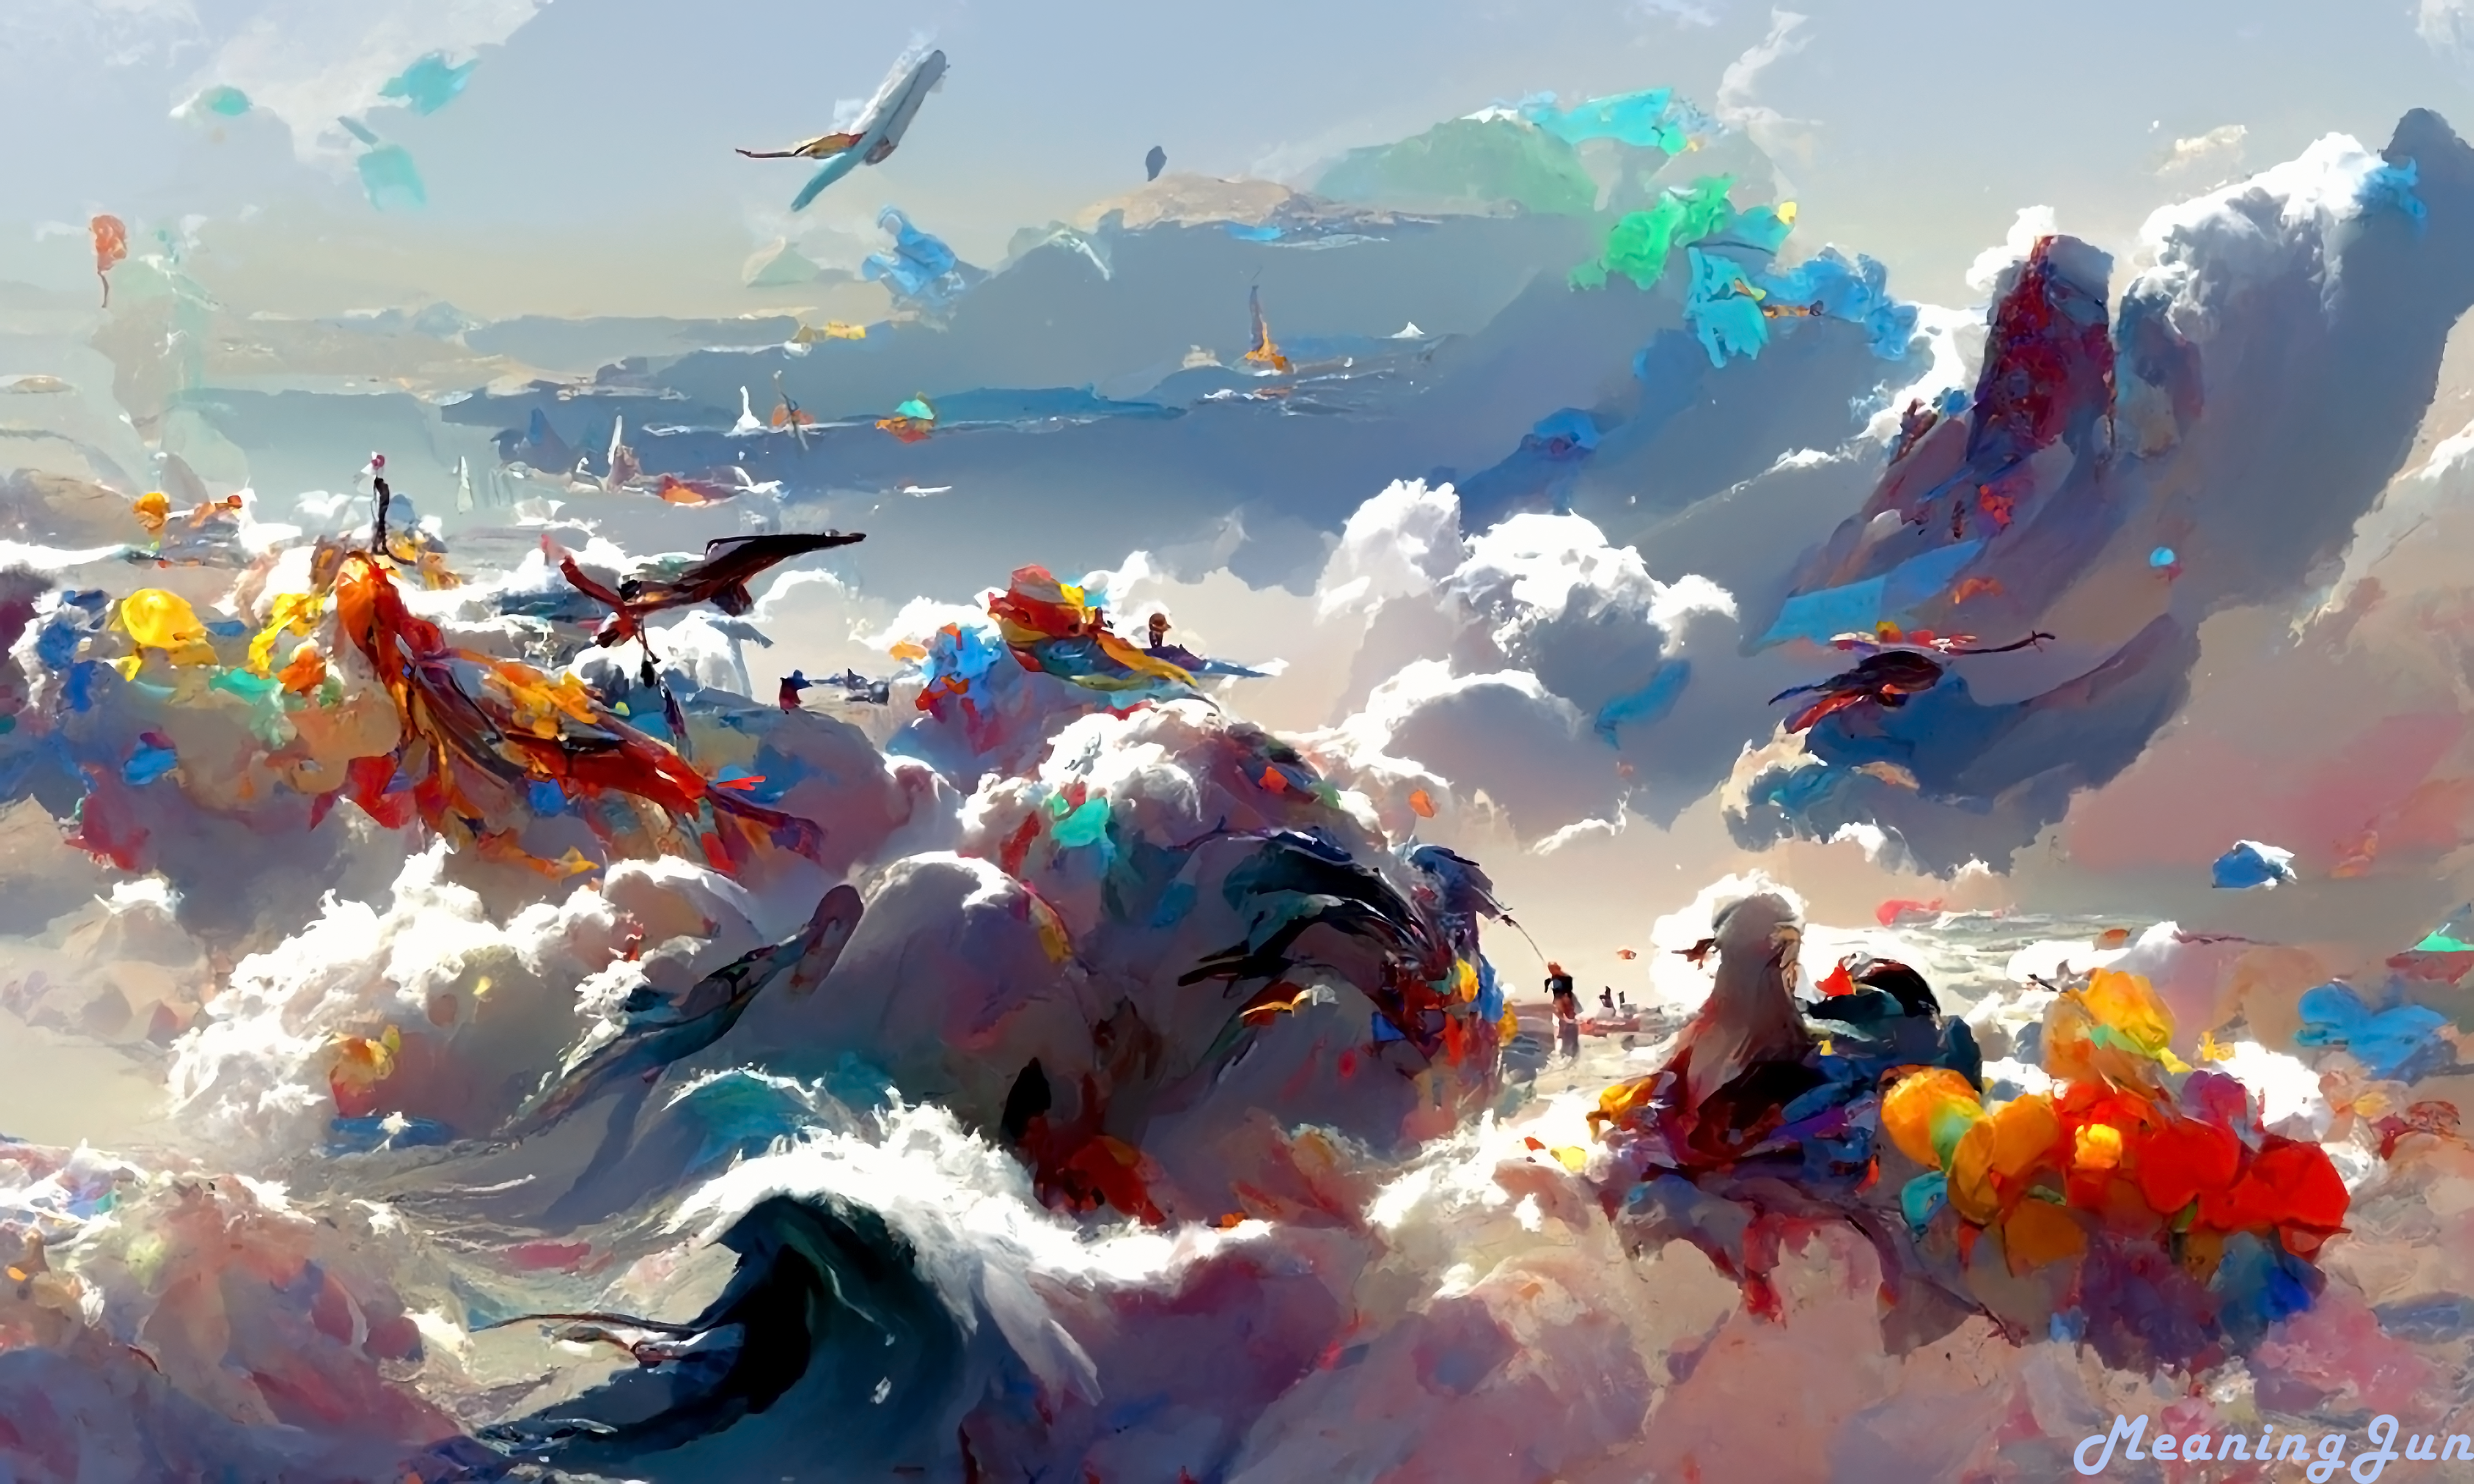 MeaningJun Ai Digital Art Ocean View Seagulls Colorful Wallpaper:3600x2160